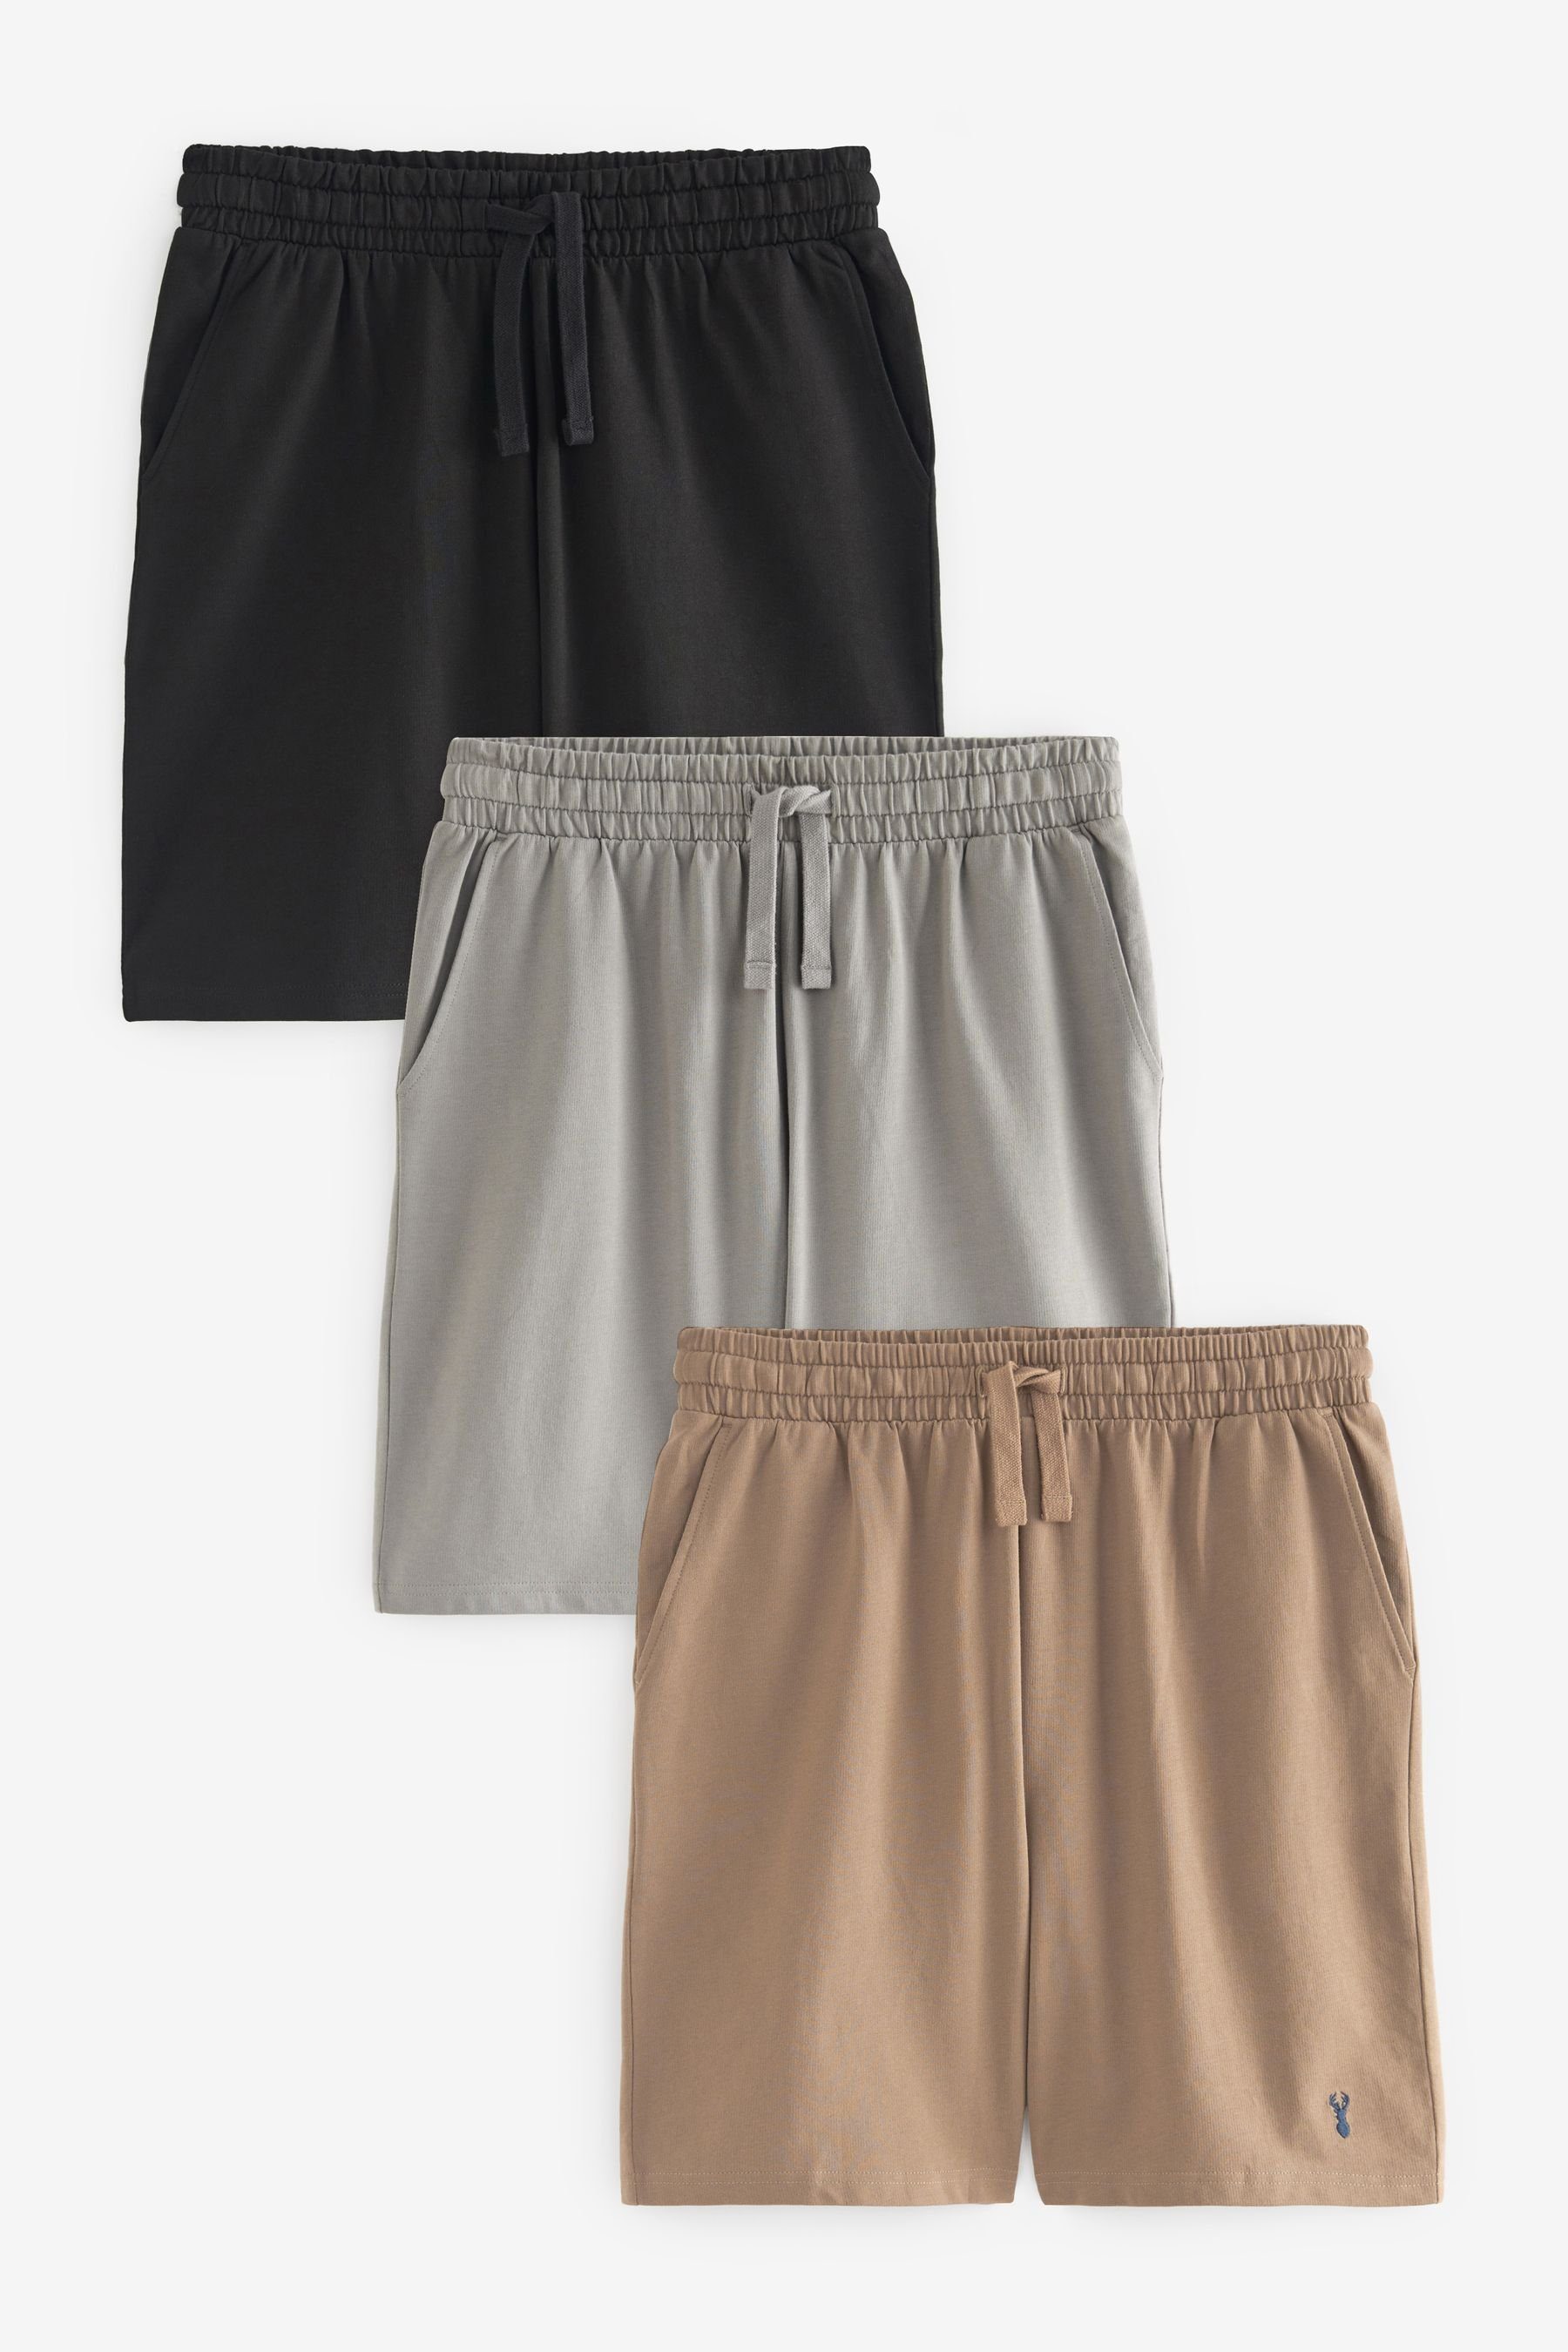 Next Schlafshorts Leichte Shorts, 3er-Pack (3-tlg) Black/Grey/Tan Brown